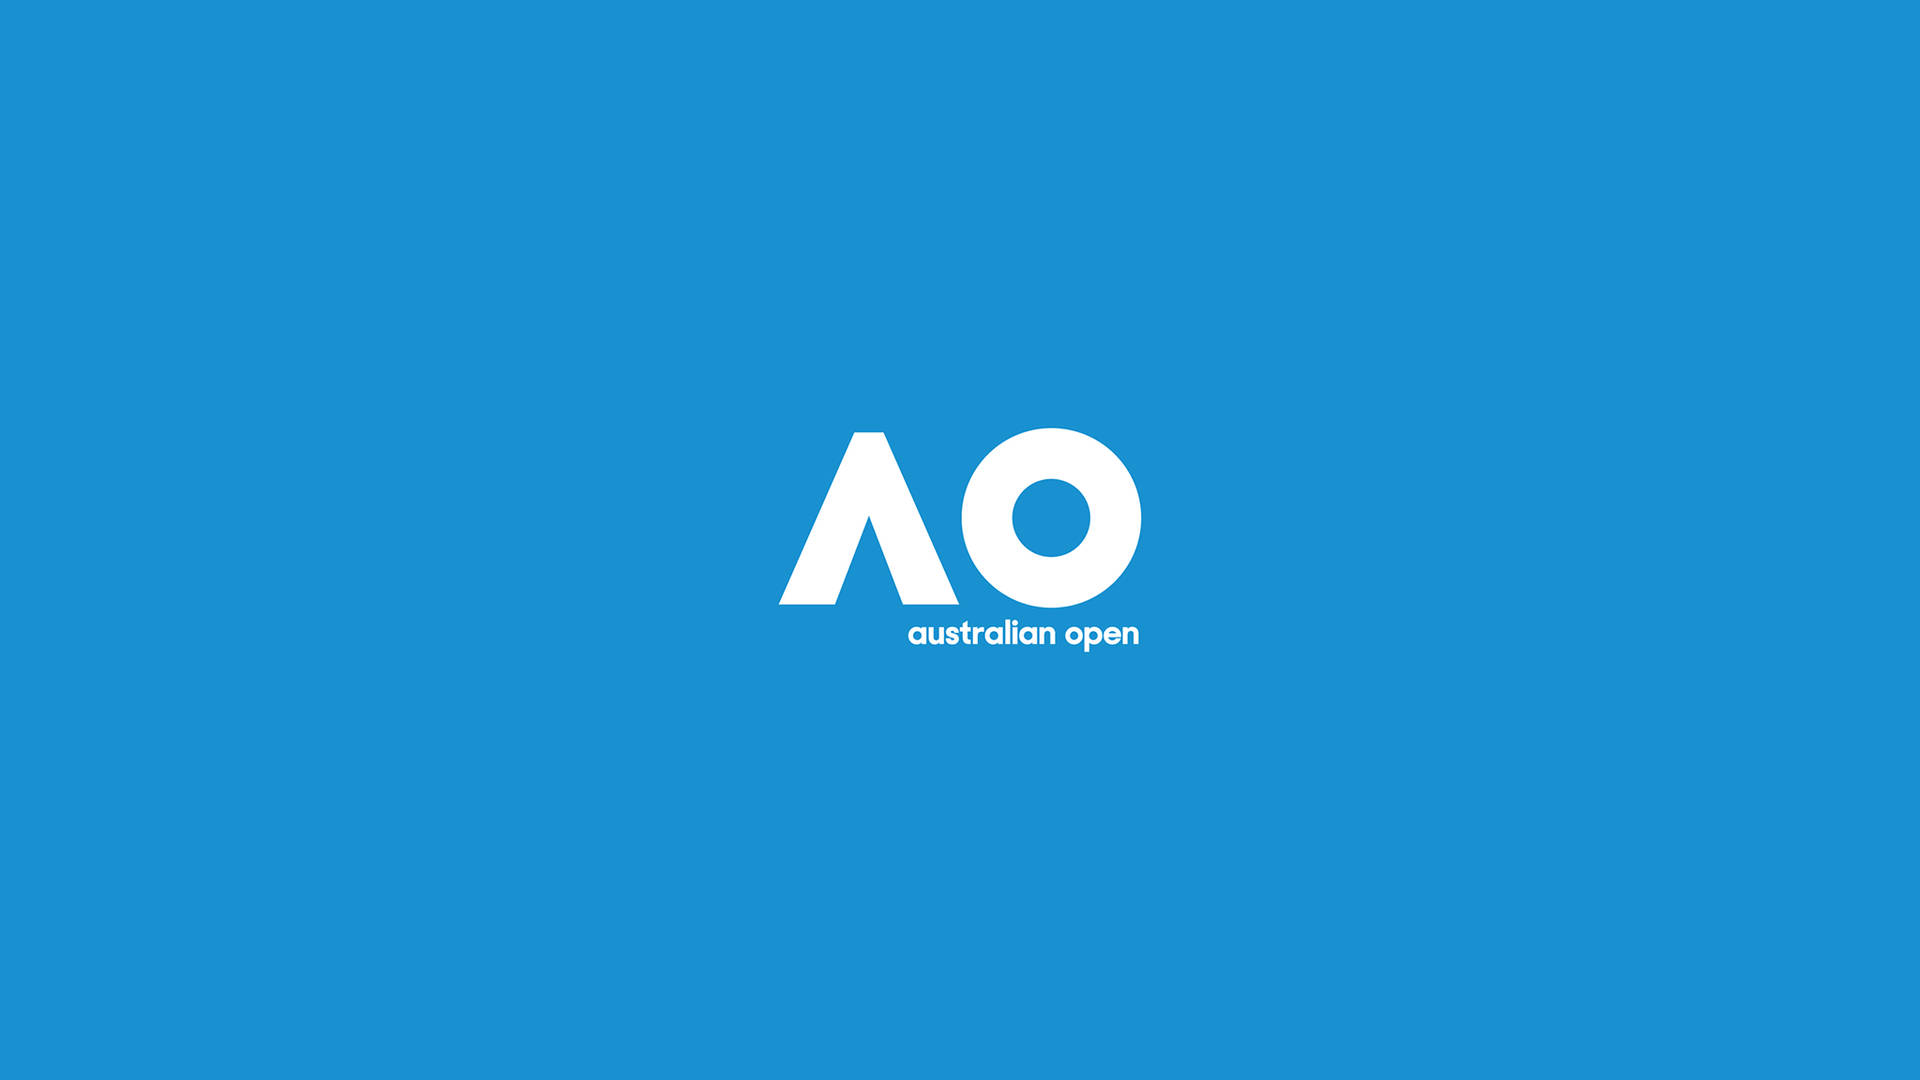 Australian Open Minimalist In Blue Picture